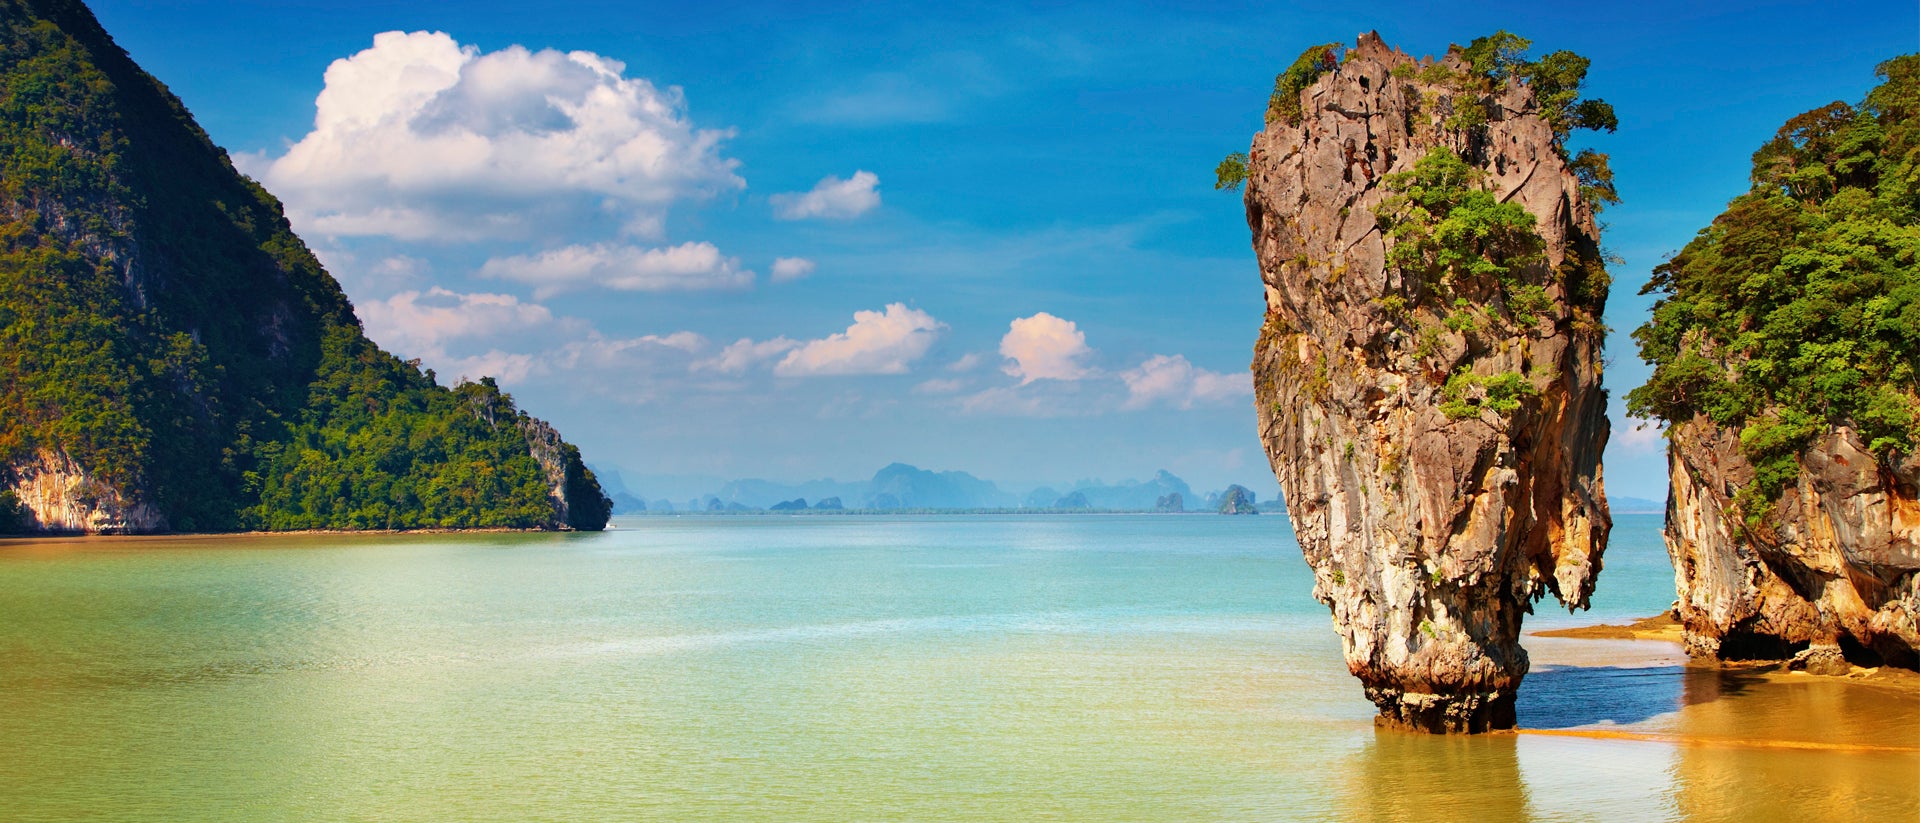 Paesaggio dell'Asia meridionale con isole rocciose e acque cristalline